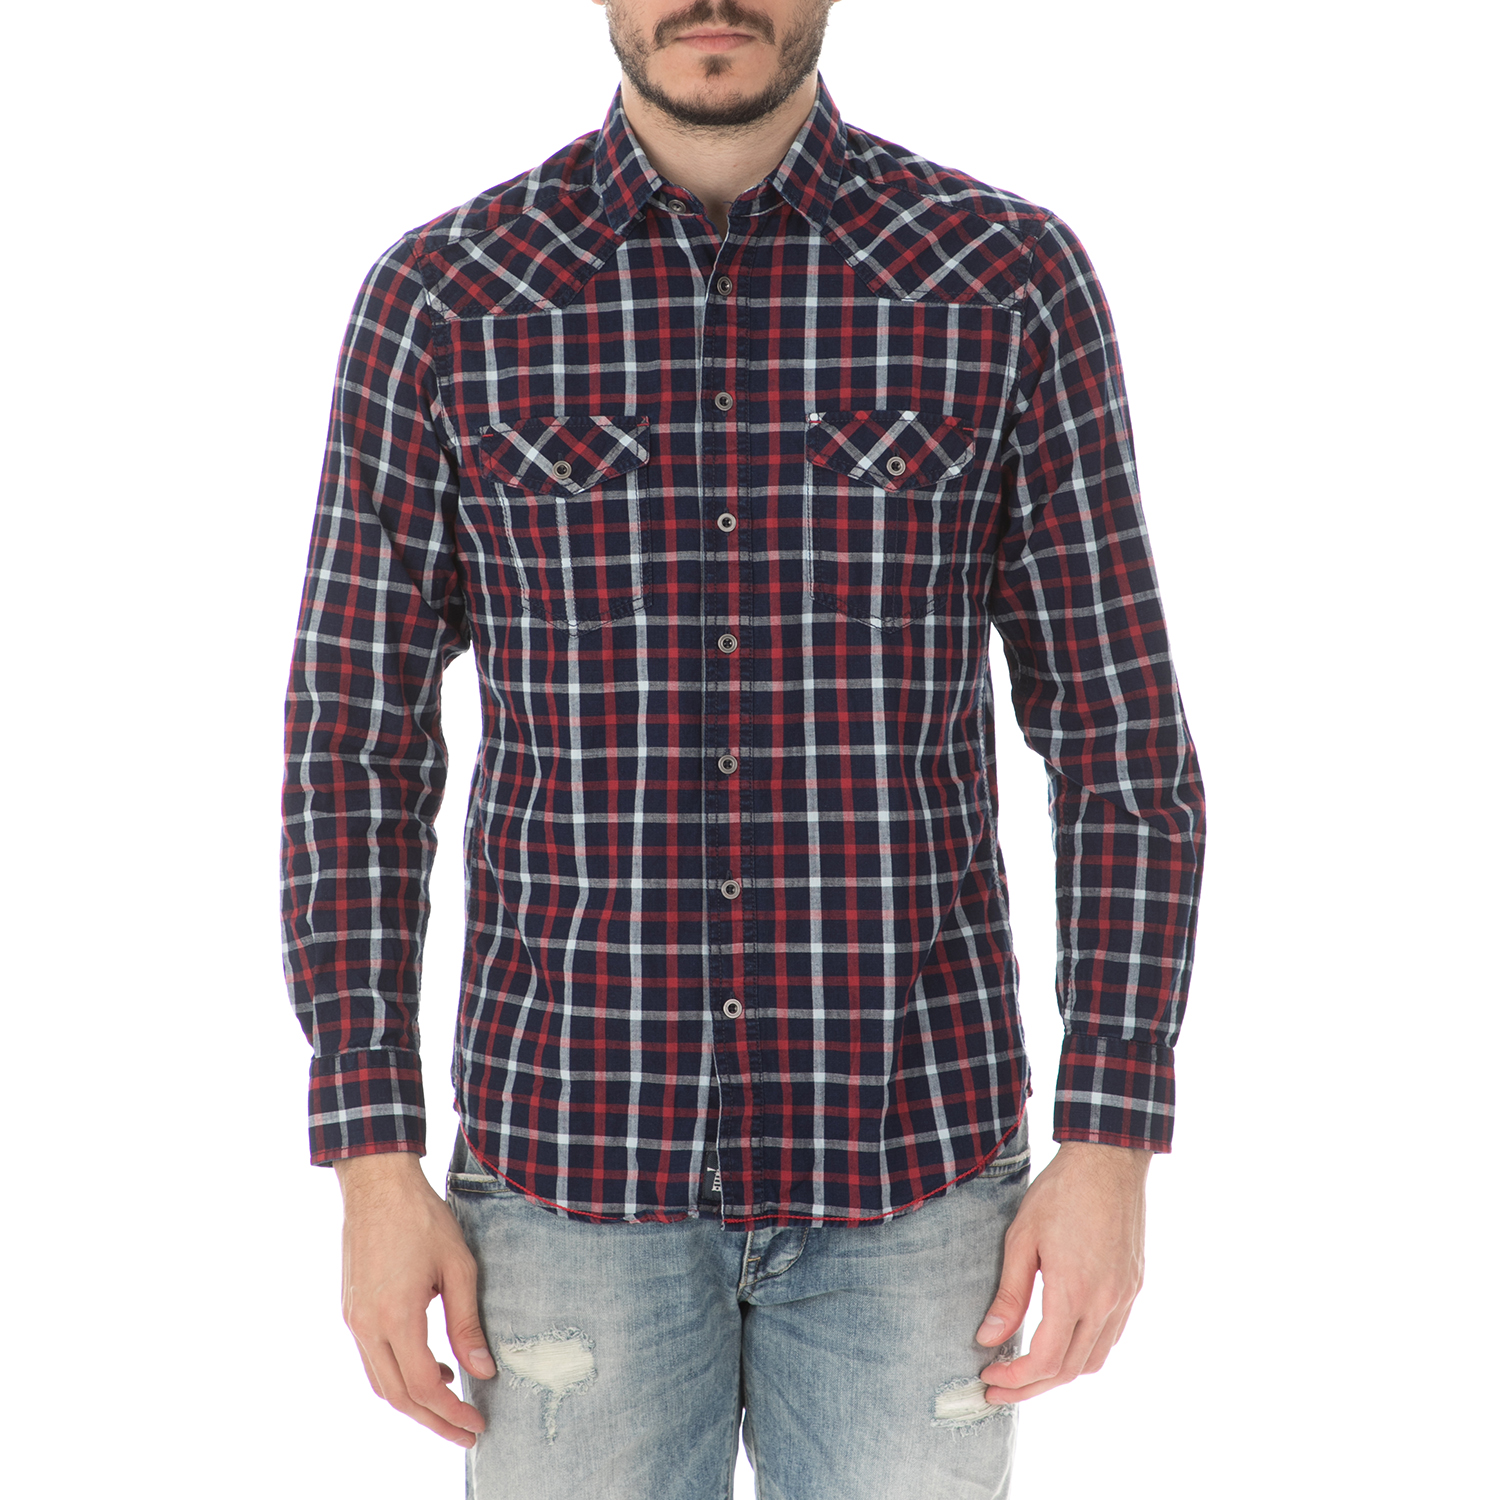 Ανδρικά/Ρούχα/Πουκάμισα/Μακρυμάνικα HAMPTONS - Ανδρικό μακρυμάνικο πουκάμισο HAMPTONS CLASSIC CHECK μπλε-κόκκινο